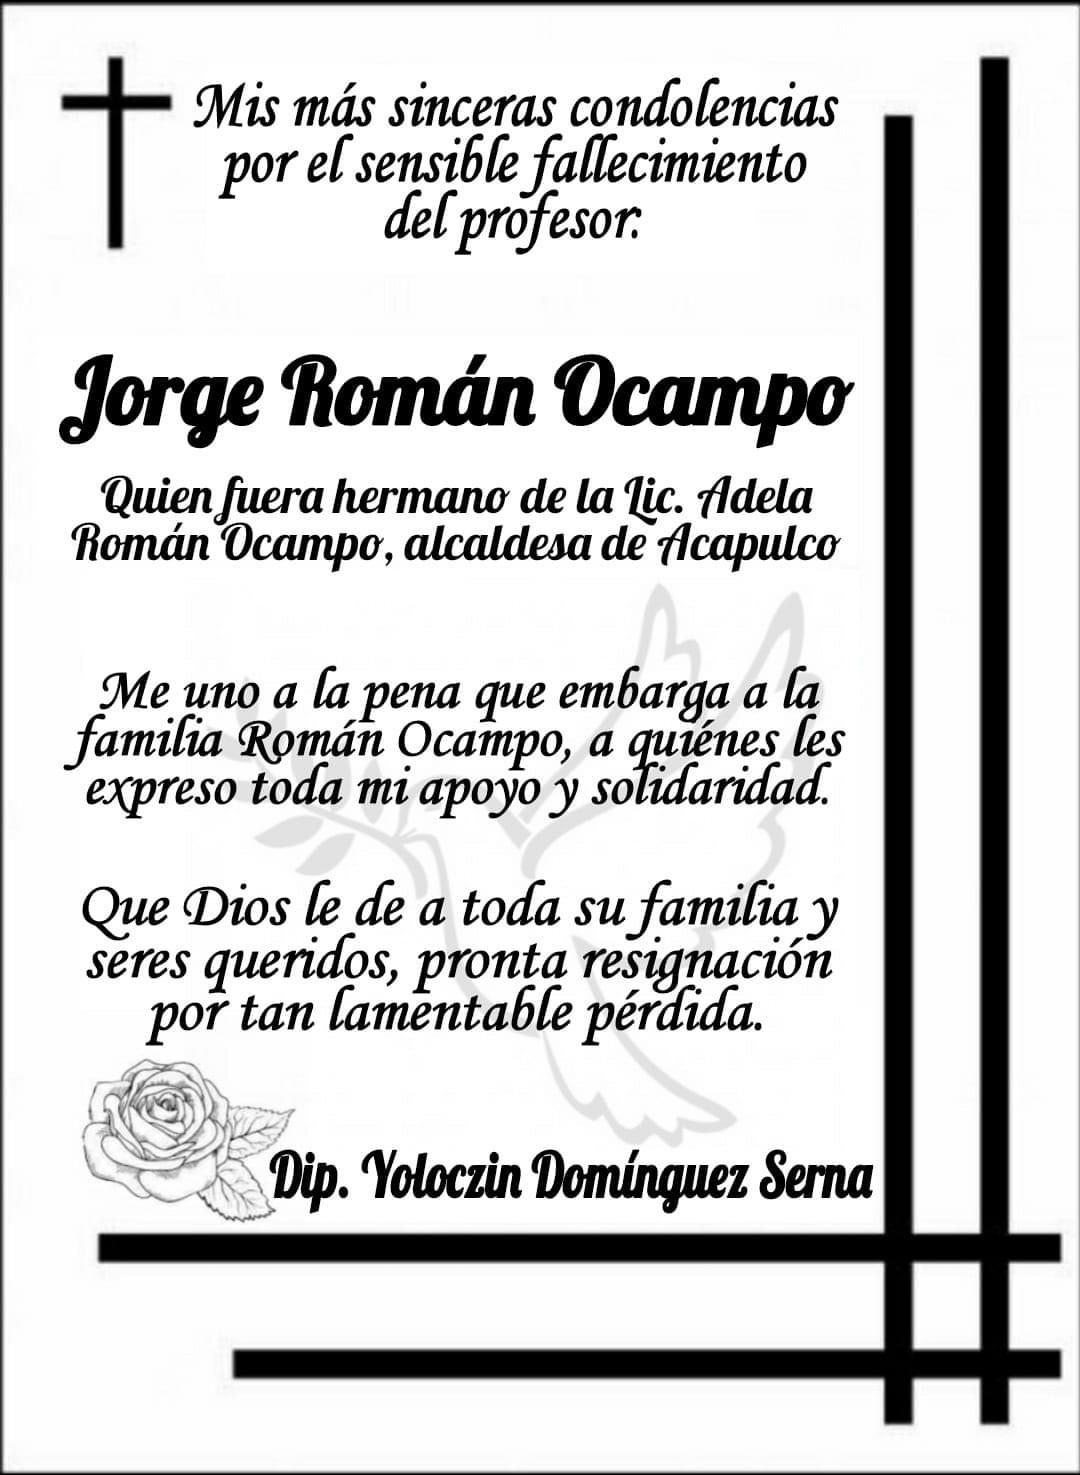 Se une Yoloczin Domínguez a la pena que embarga a la familia Román Ocampo 